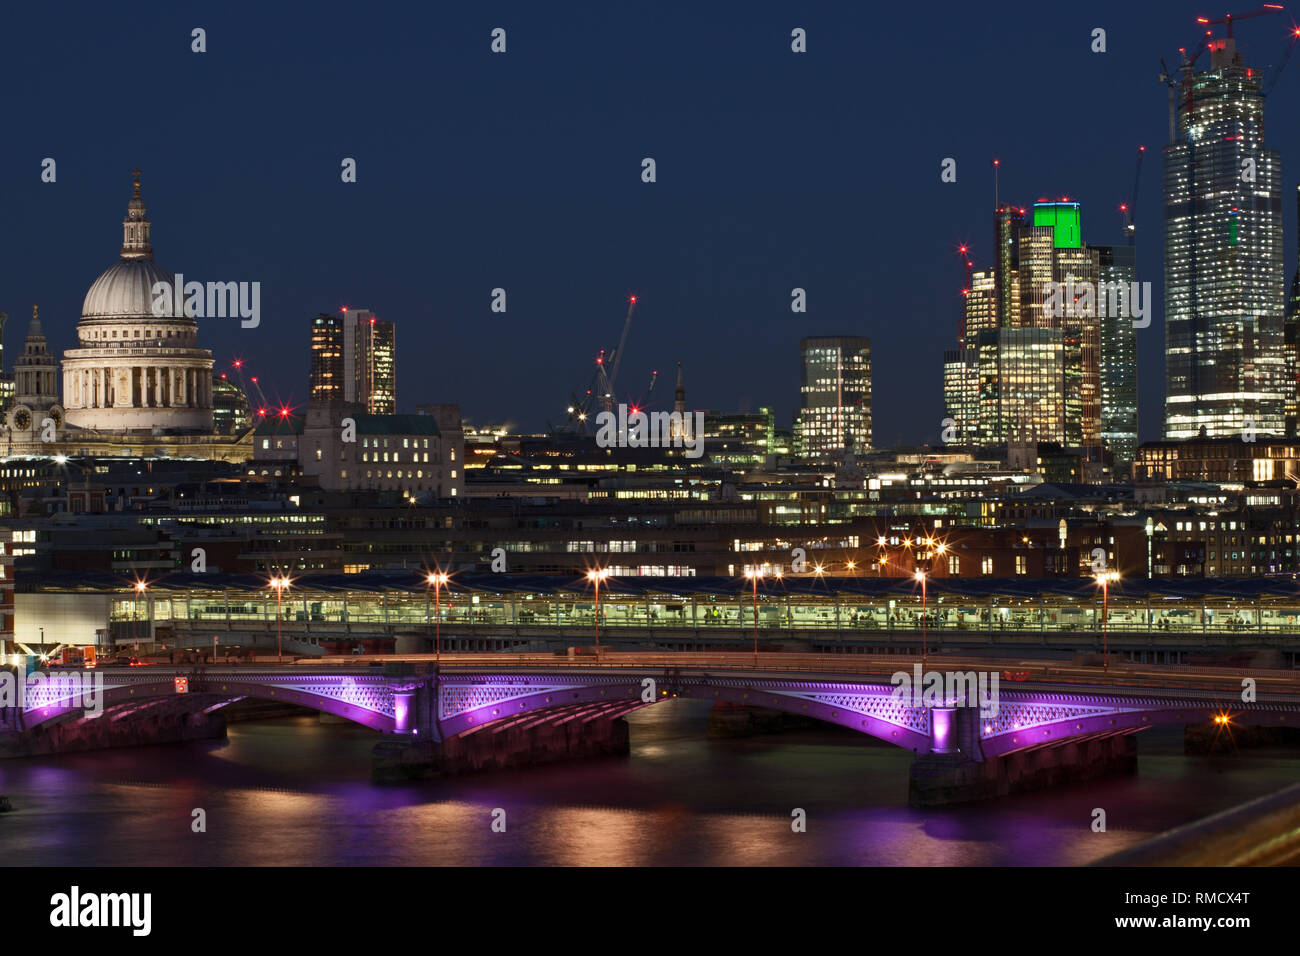 Paysage urbain de Londres by night - Quartier des Finances Banque D'Images